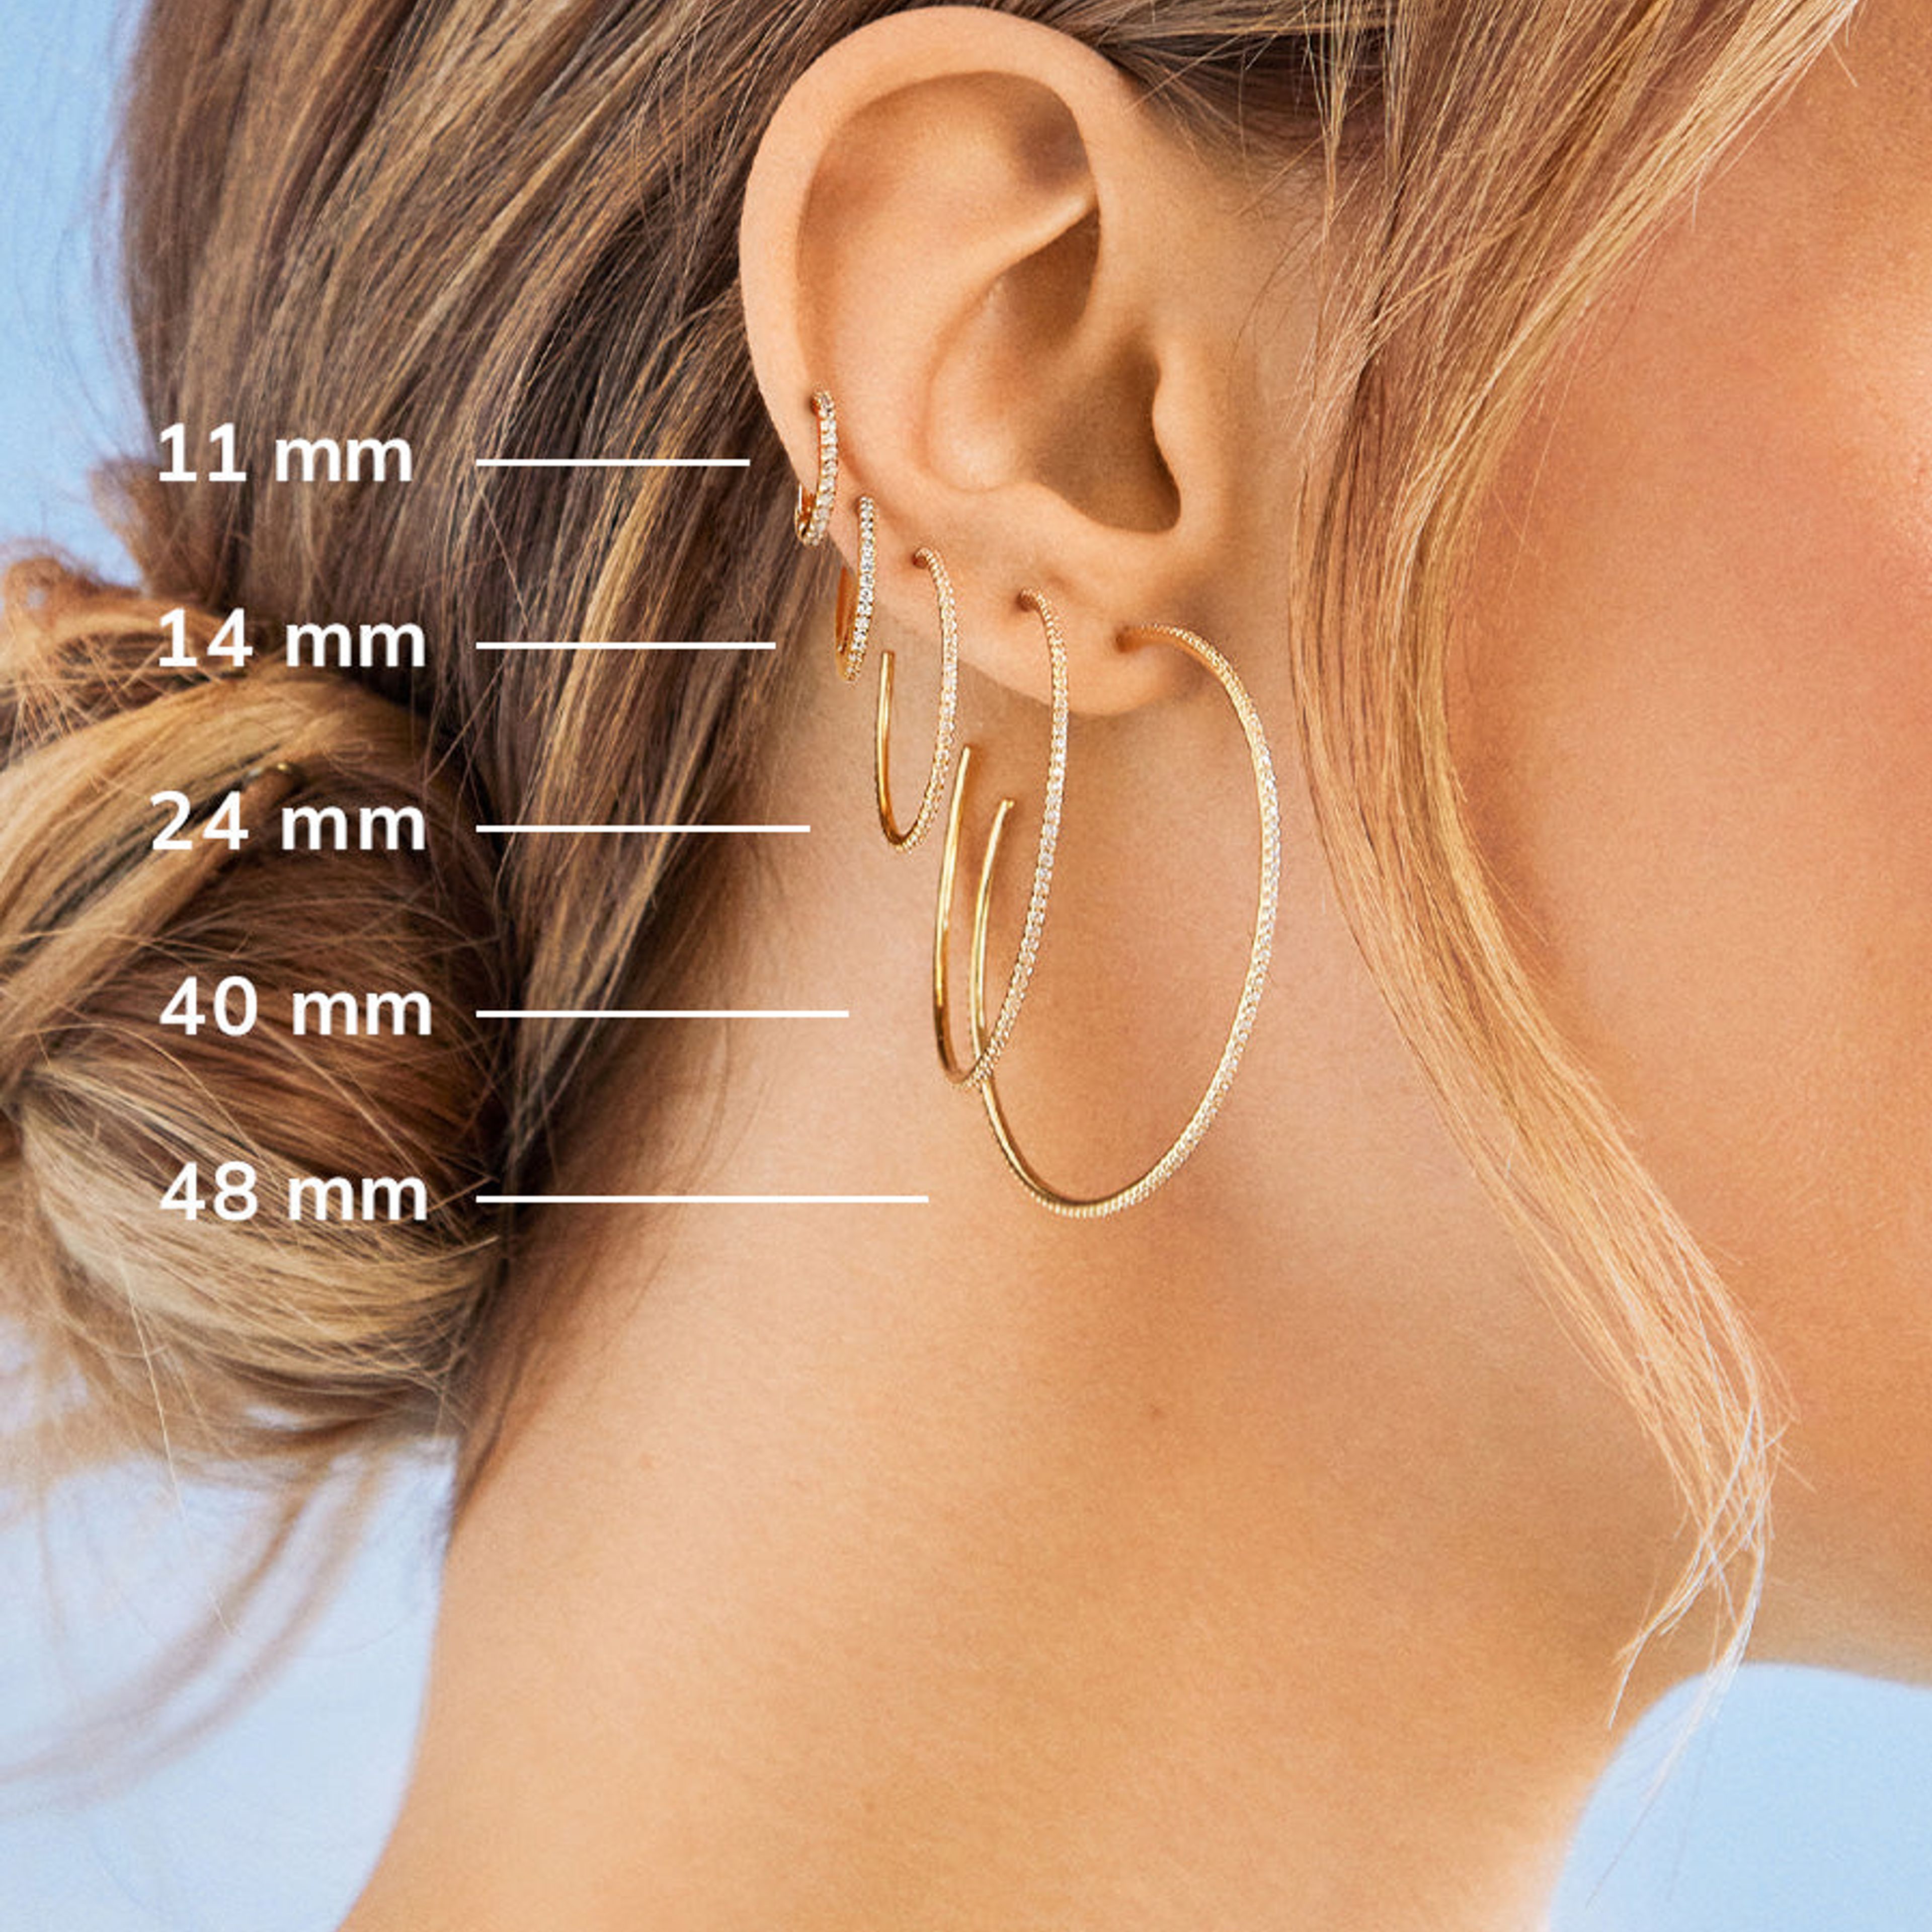 Niata 18K Gold Earrings - 11MM